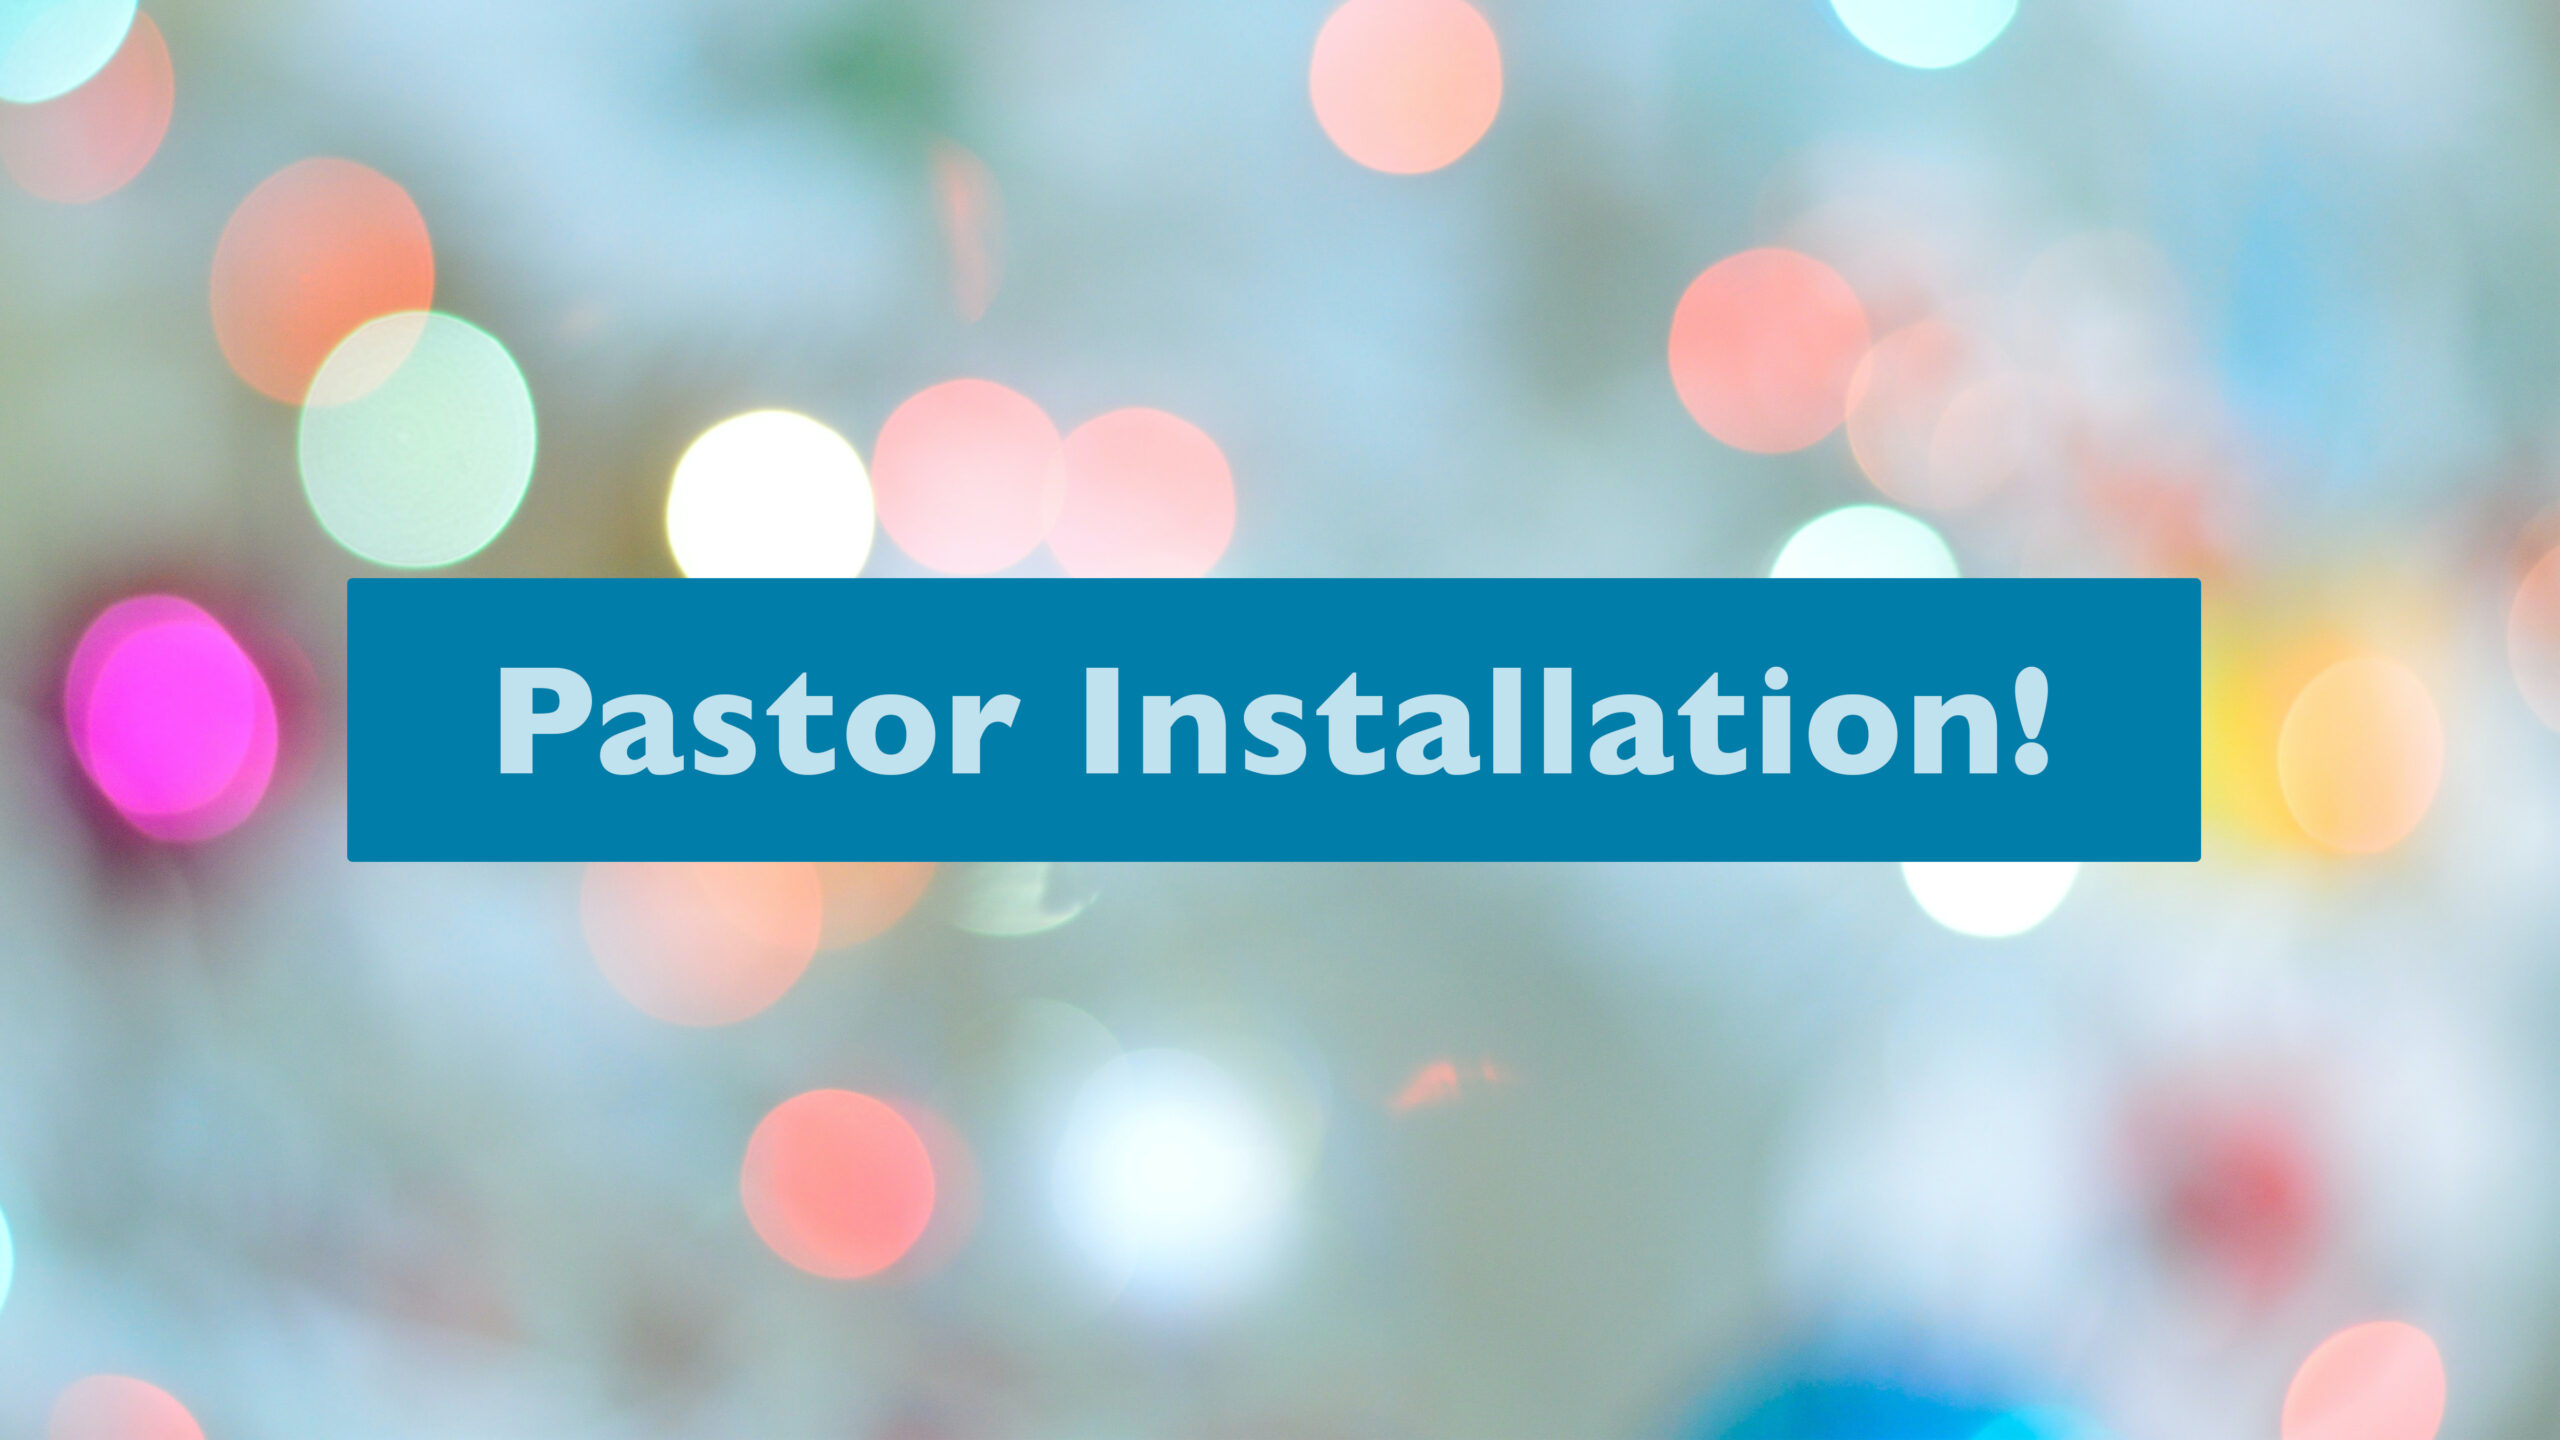 Pastor Installation!